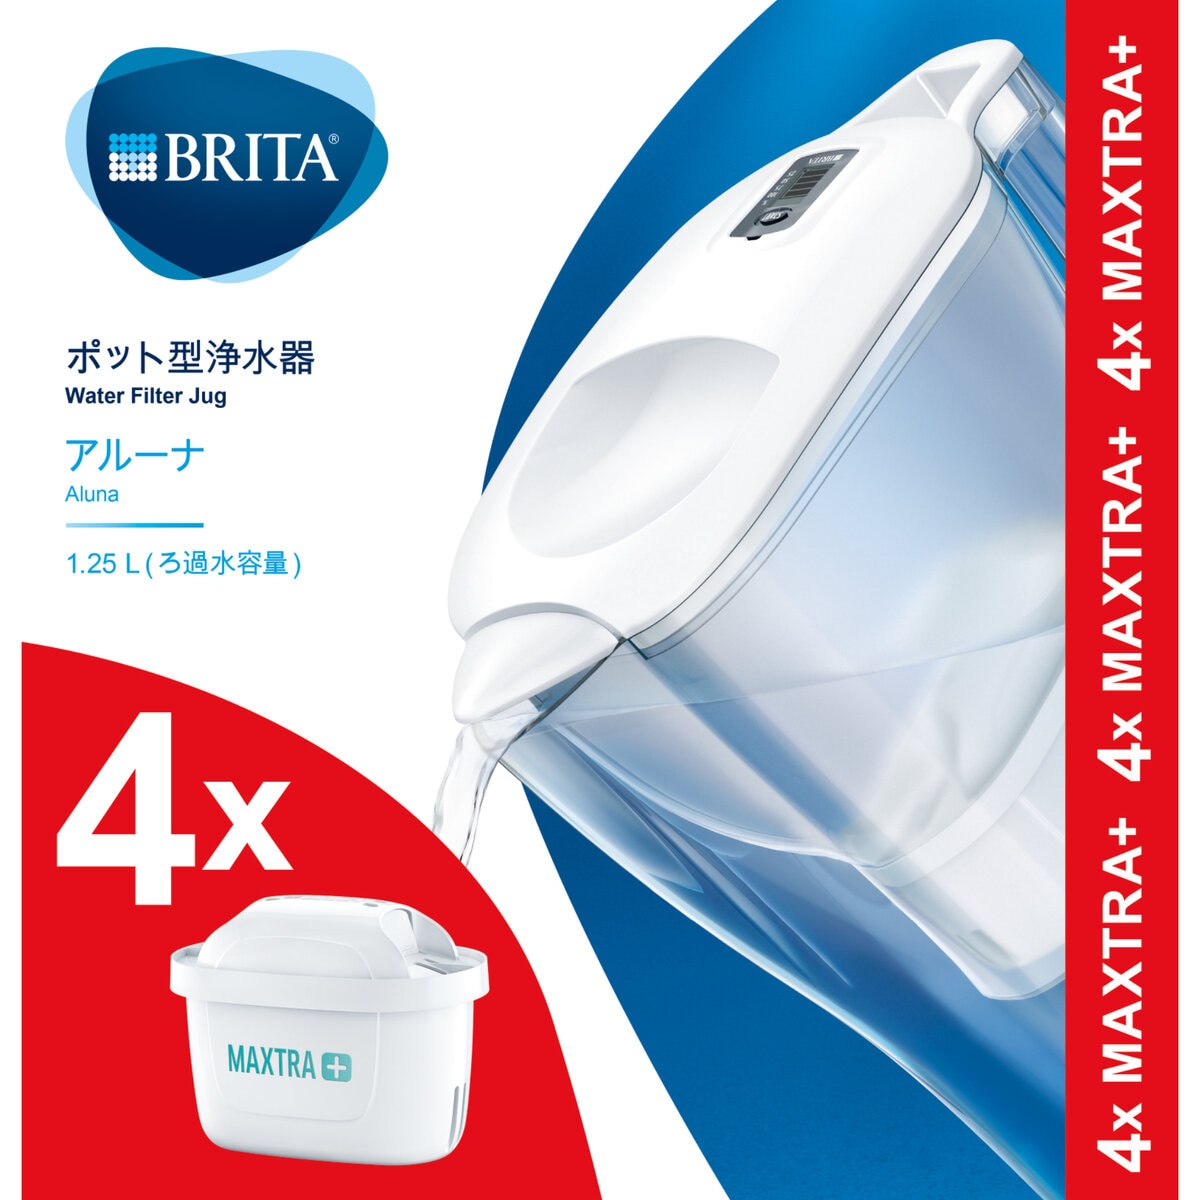 ブリタ ポット型浄水器 アルーナ カートリッジ4個付き | Costco Japan